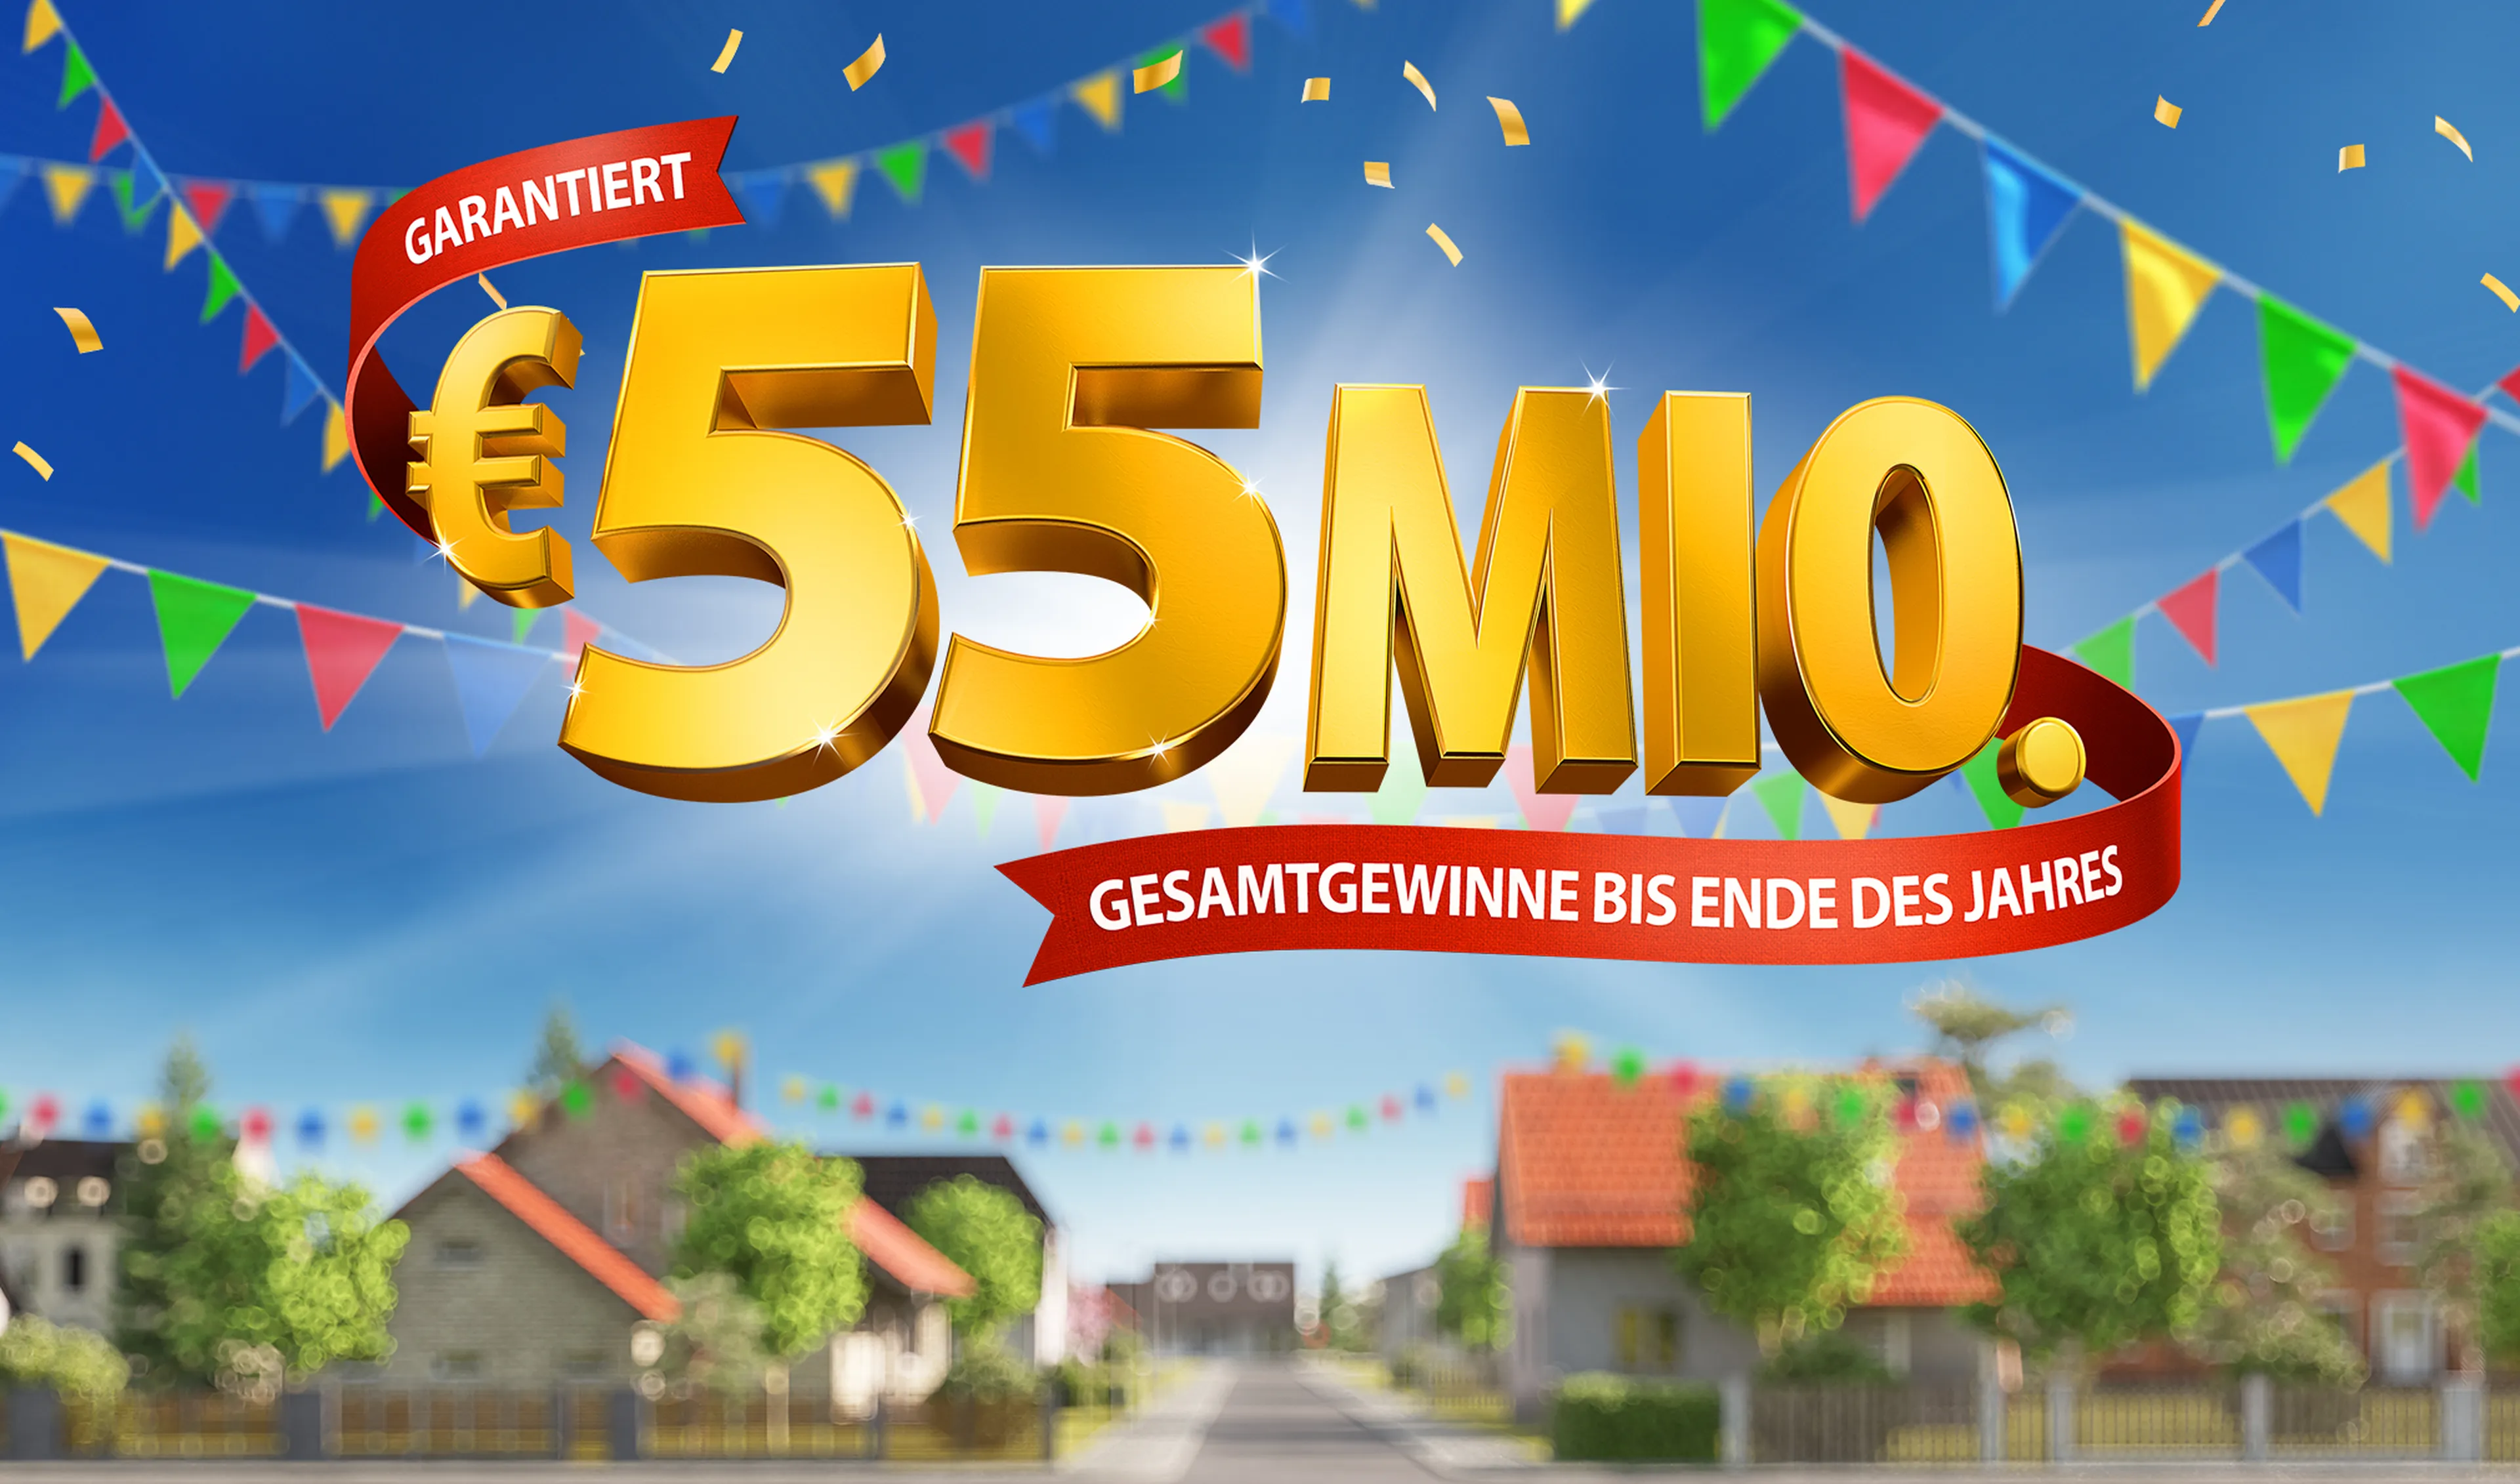 Bei der Deutschen Postcode Lotterie gibt es bis Ende des Jahres noch garantiert 55 Millionen Euro Gesamtgewinne